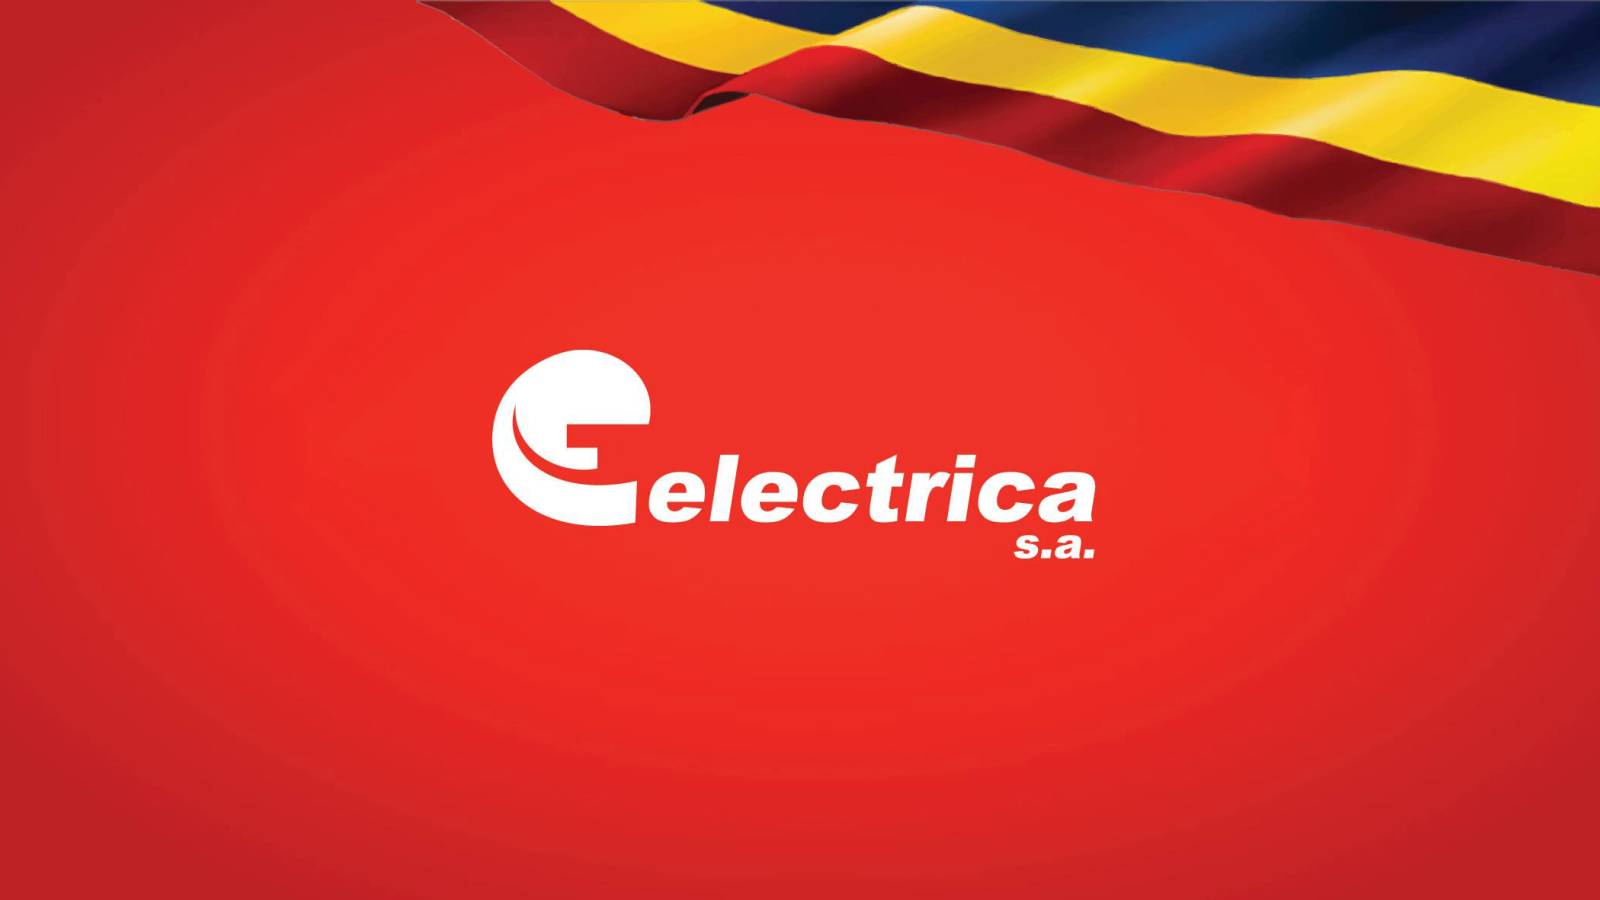 Offizielle Informationen von Electrica WICHTIGE LAST-MINUTE-Maßnahmen für rumänische Kunden